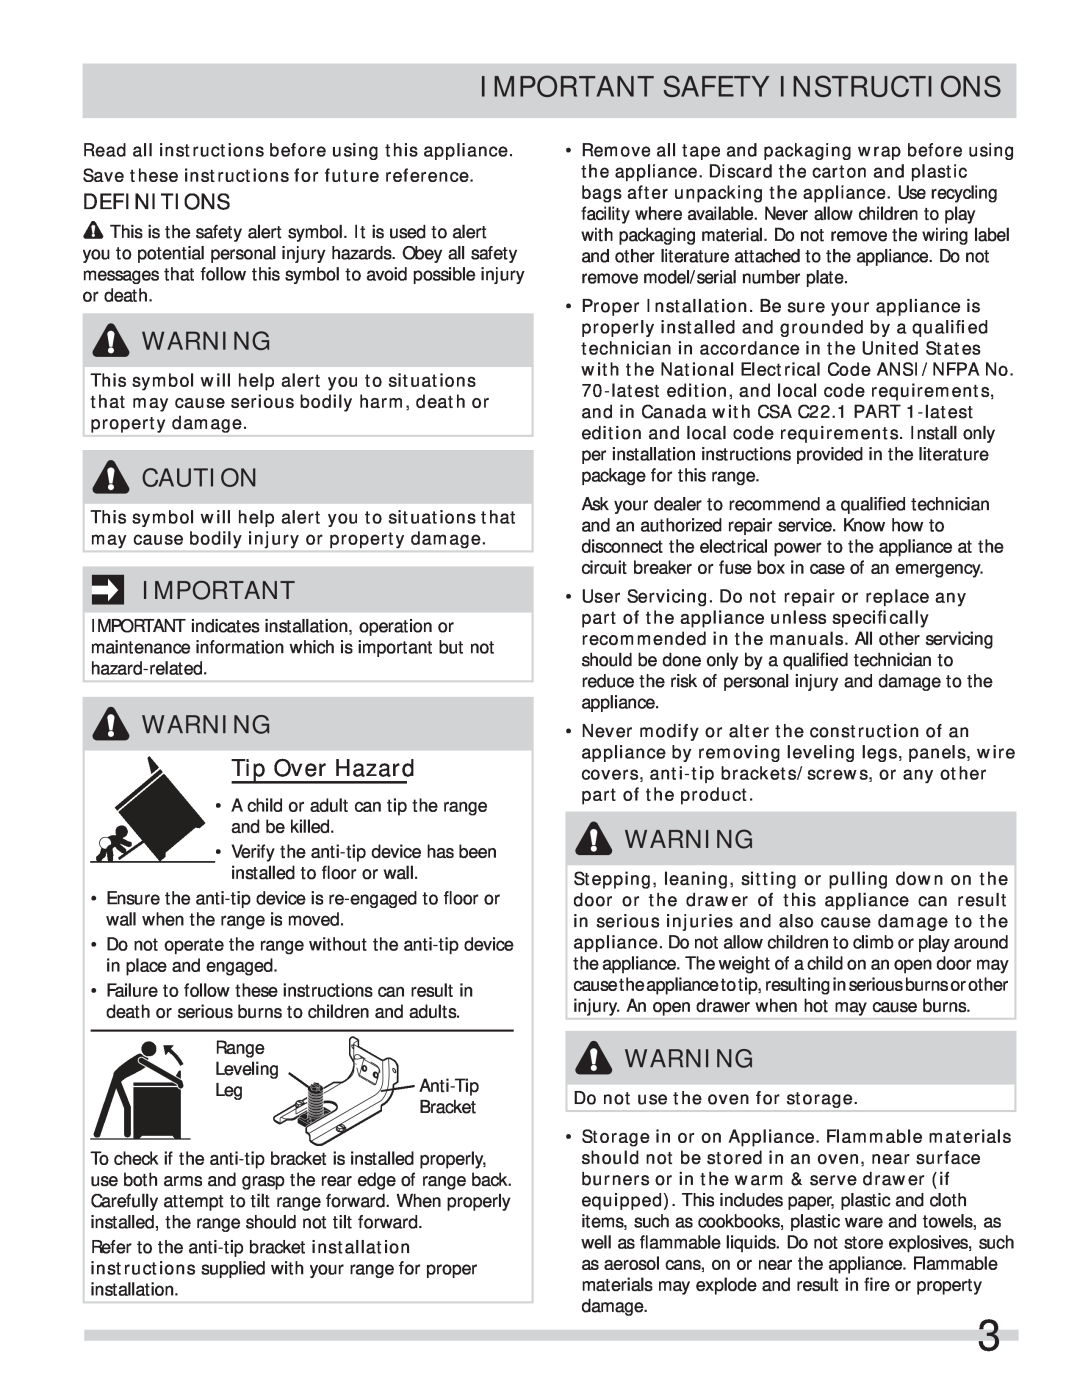 Frigidaire FPEF4085KF important safety instructions Important Safety Instructions, Definitions, Tip Over Hazard 